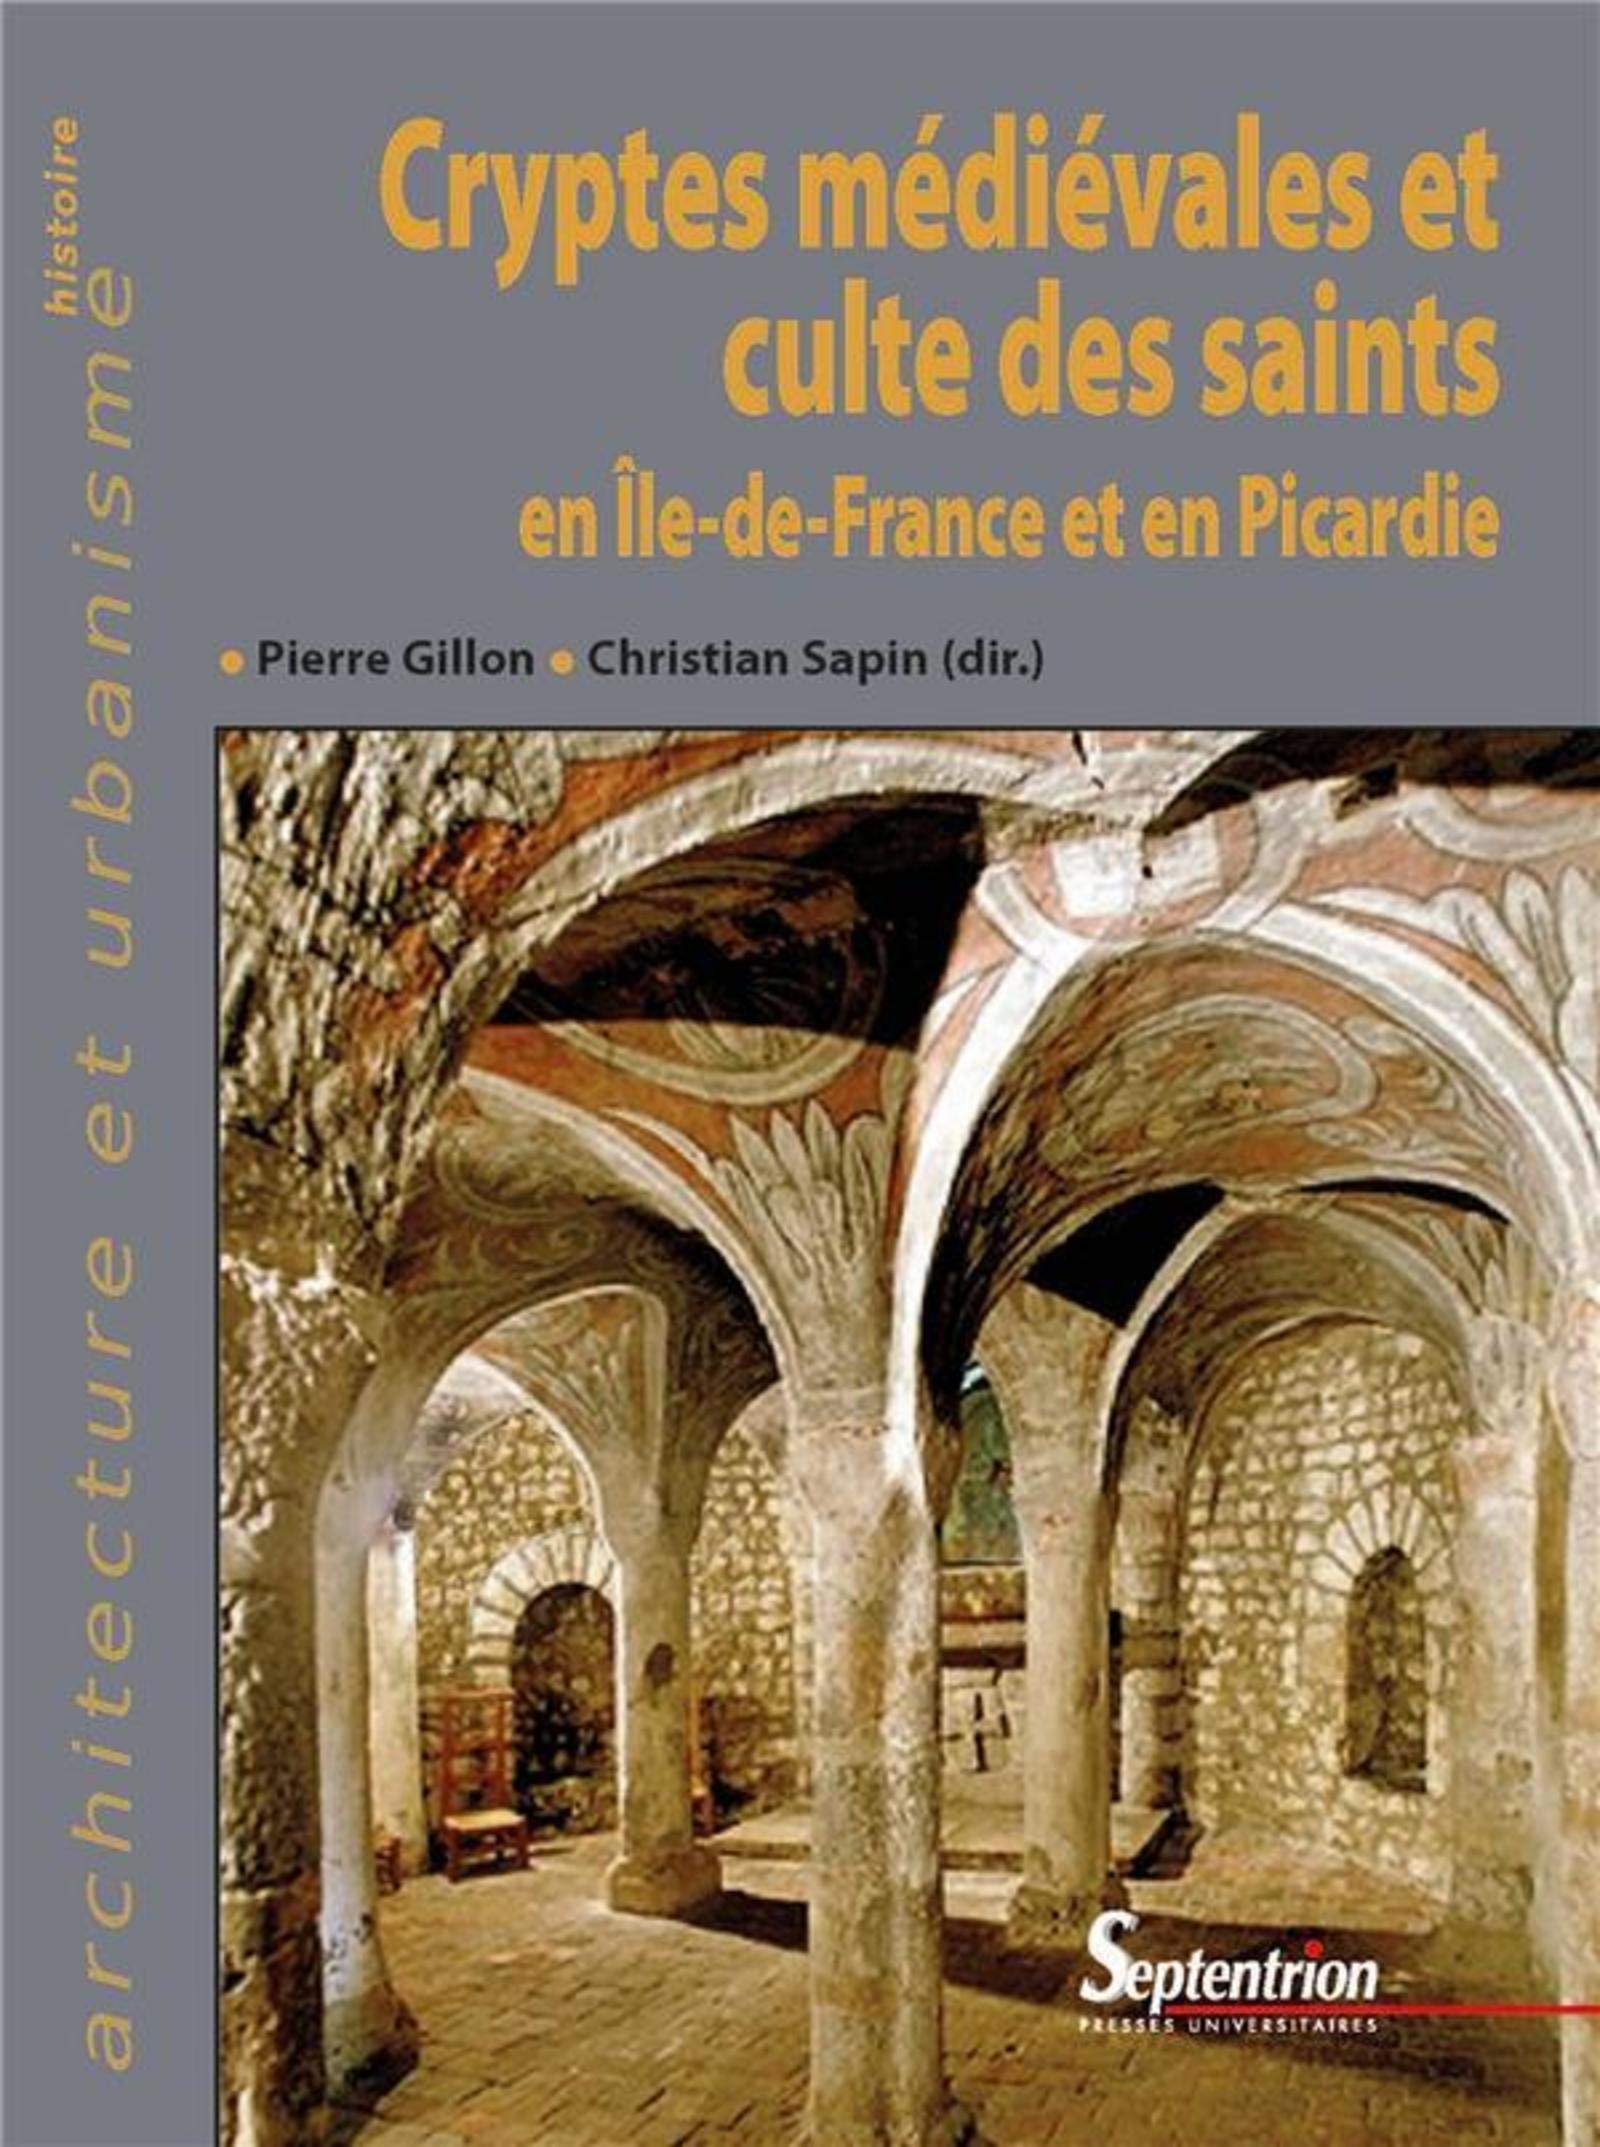 Cryptes médiévales et culte des saints en Île-de-France et en Picardie, 2019, 526 p.